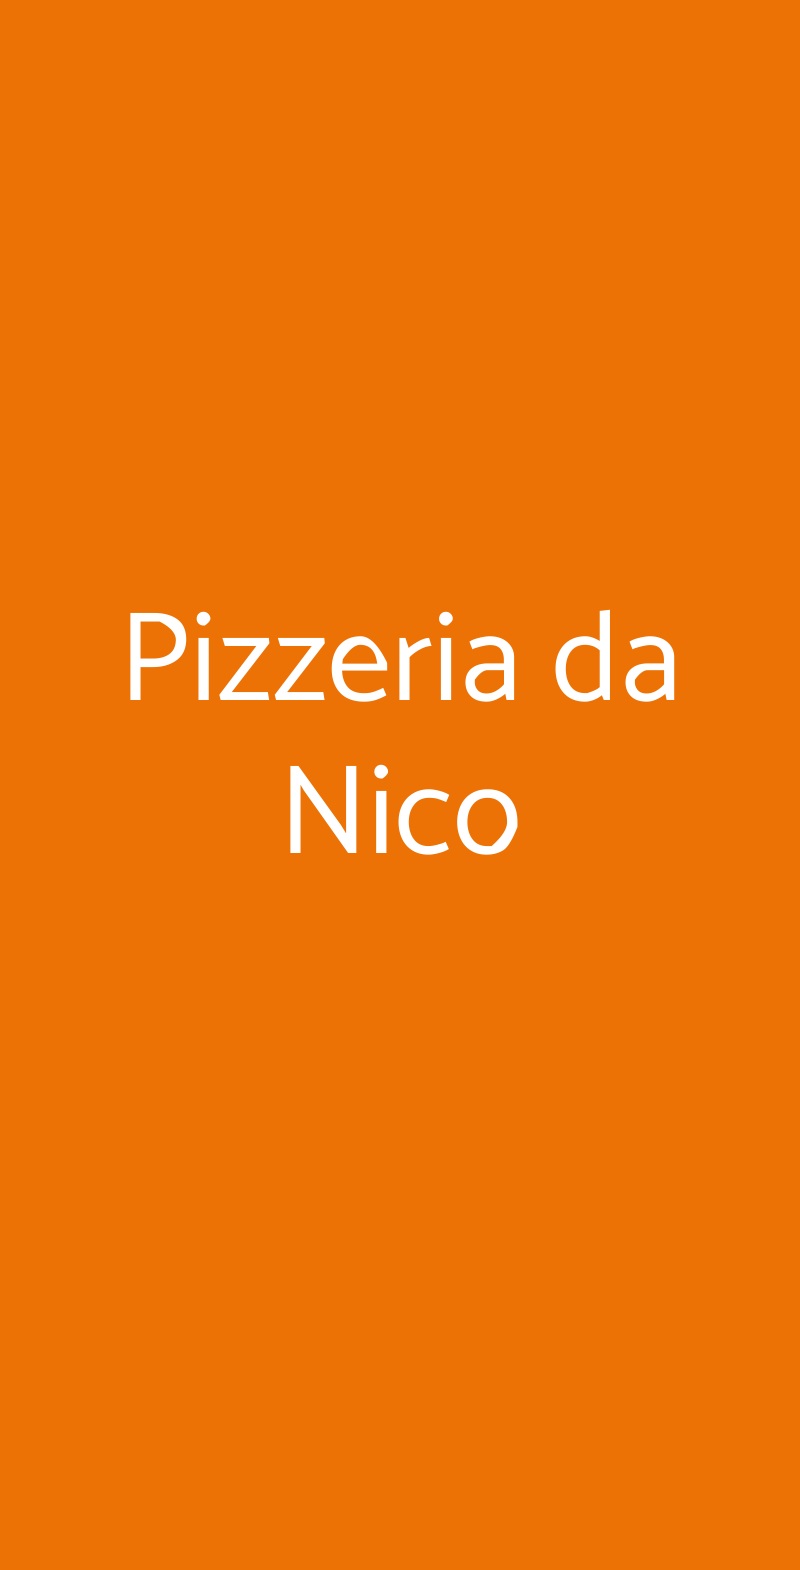 Pizzeria da Nico Bari menù 1 pagina